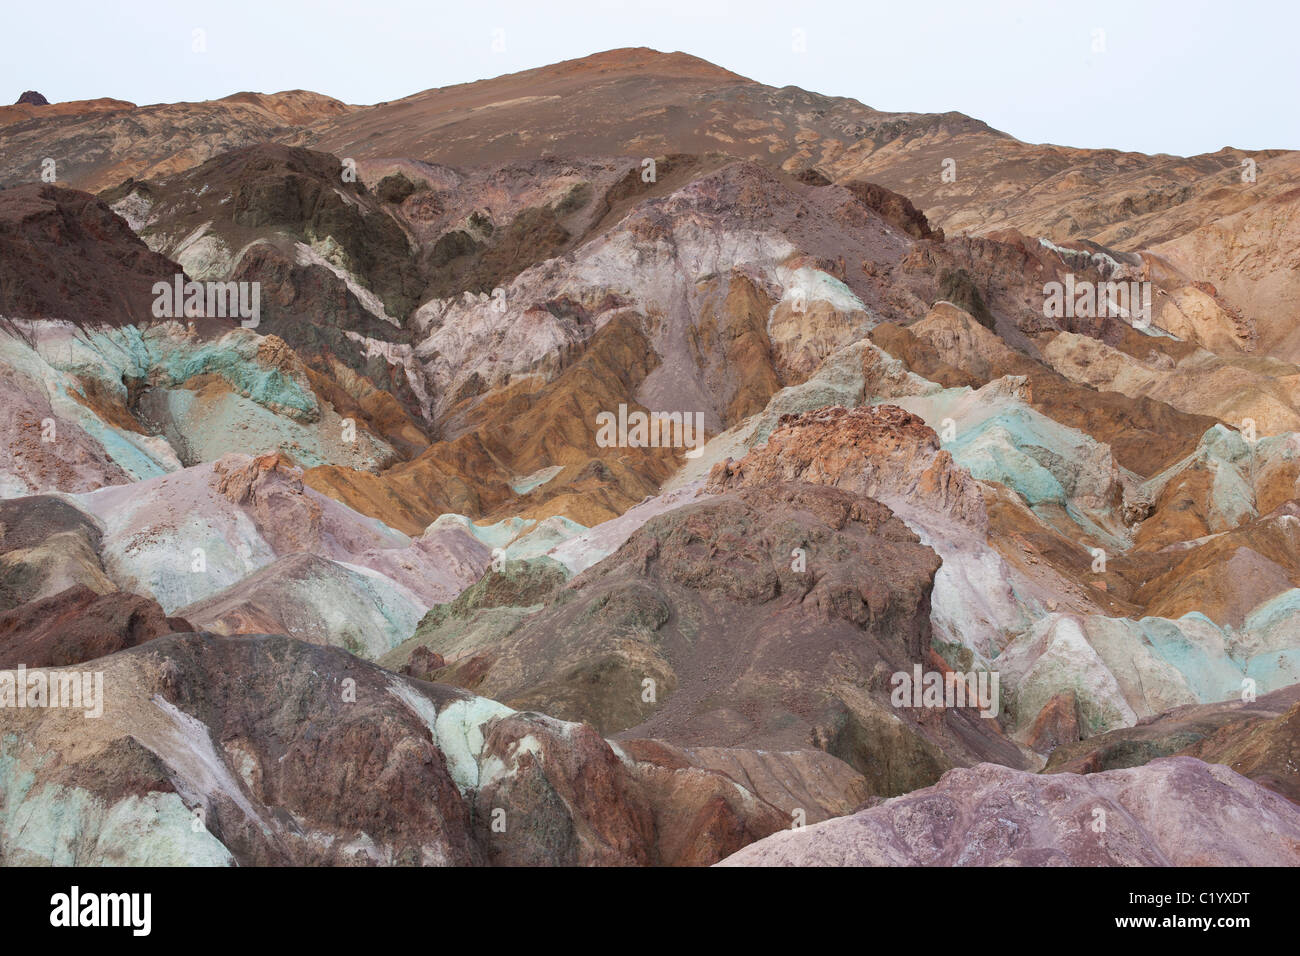 Artists palette è una formazione rocciosa multicolore nel Death Valley National Park, nella contea di Inyo, California, USA. Foto Stock